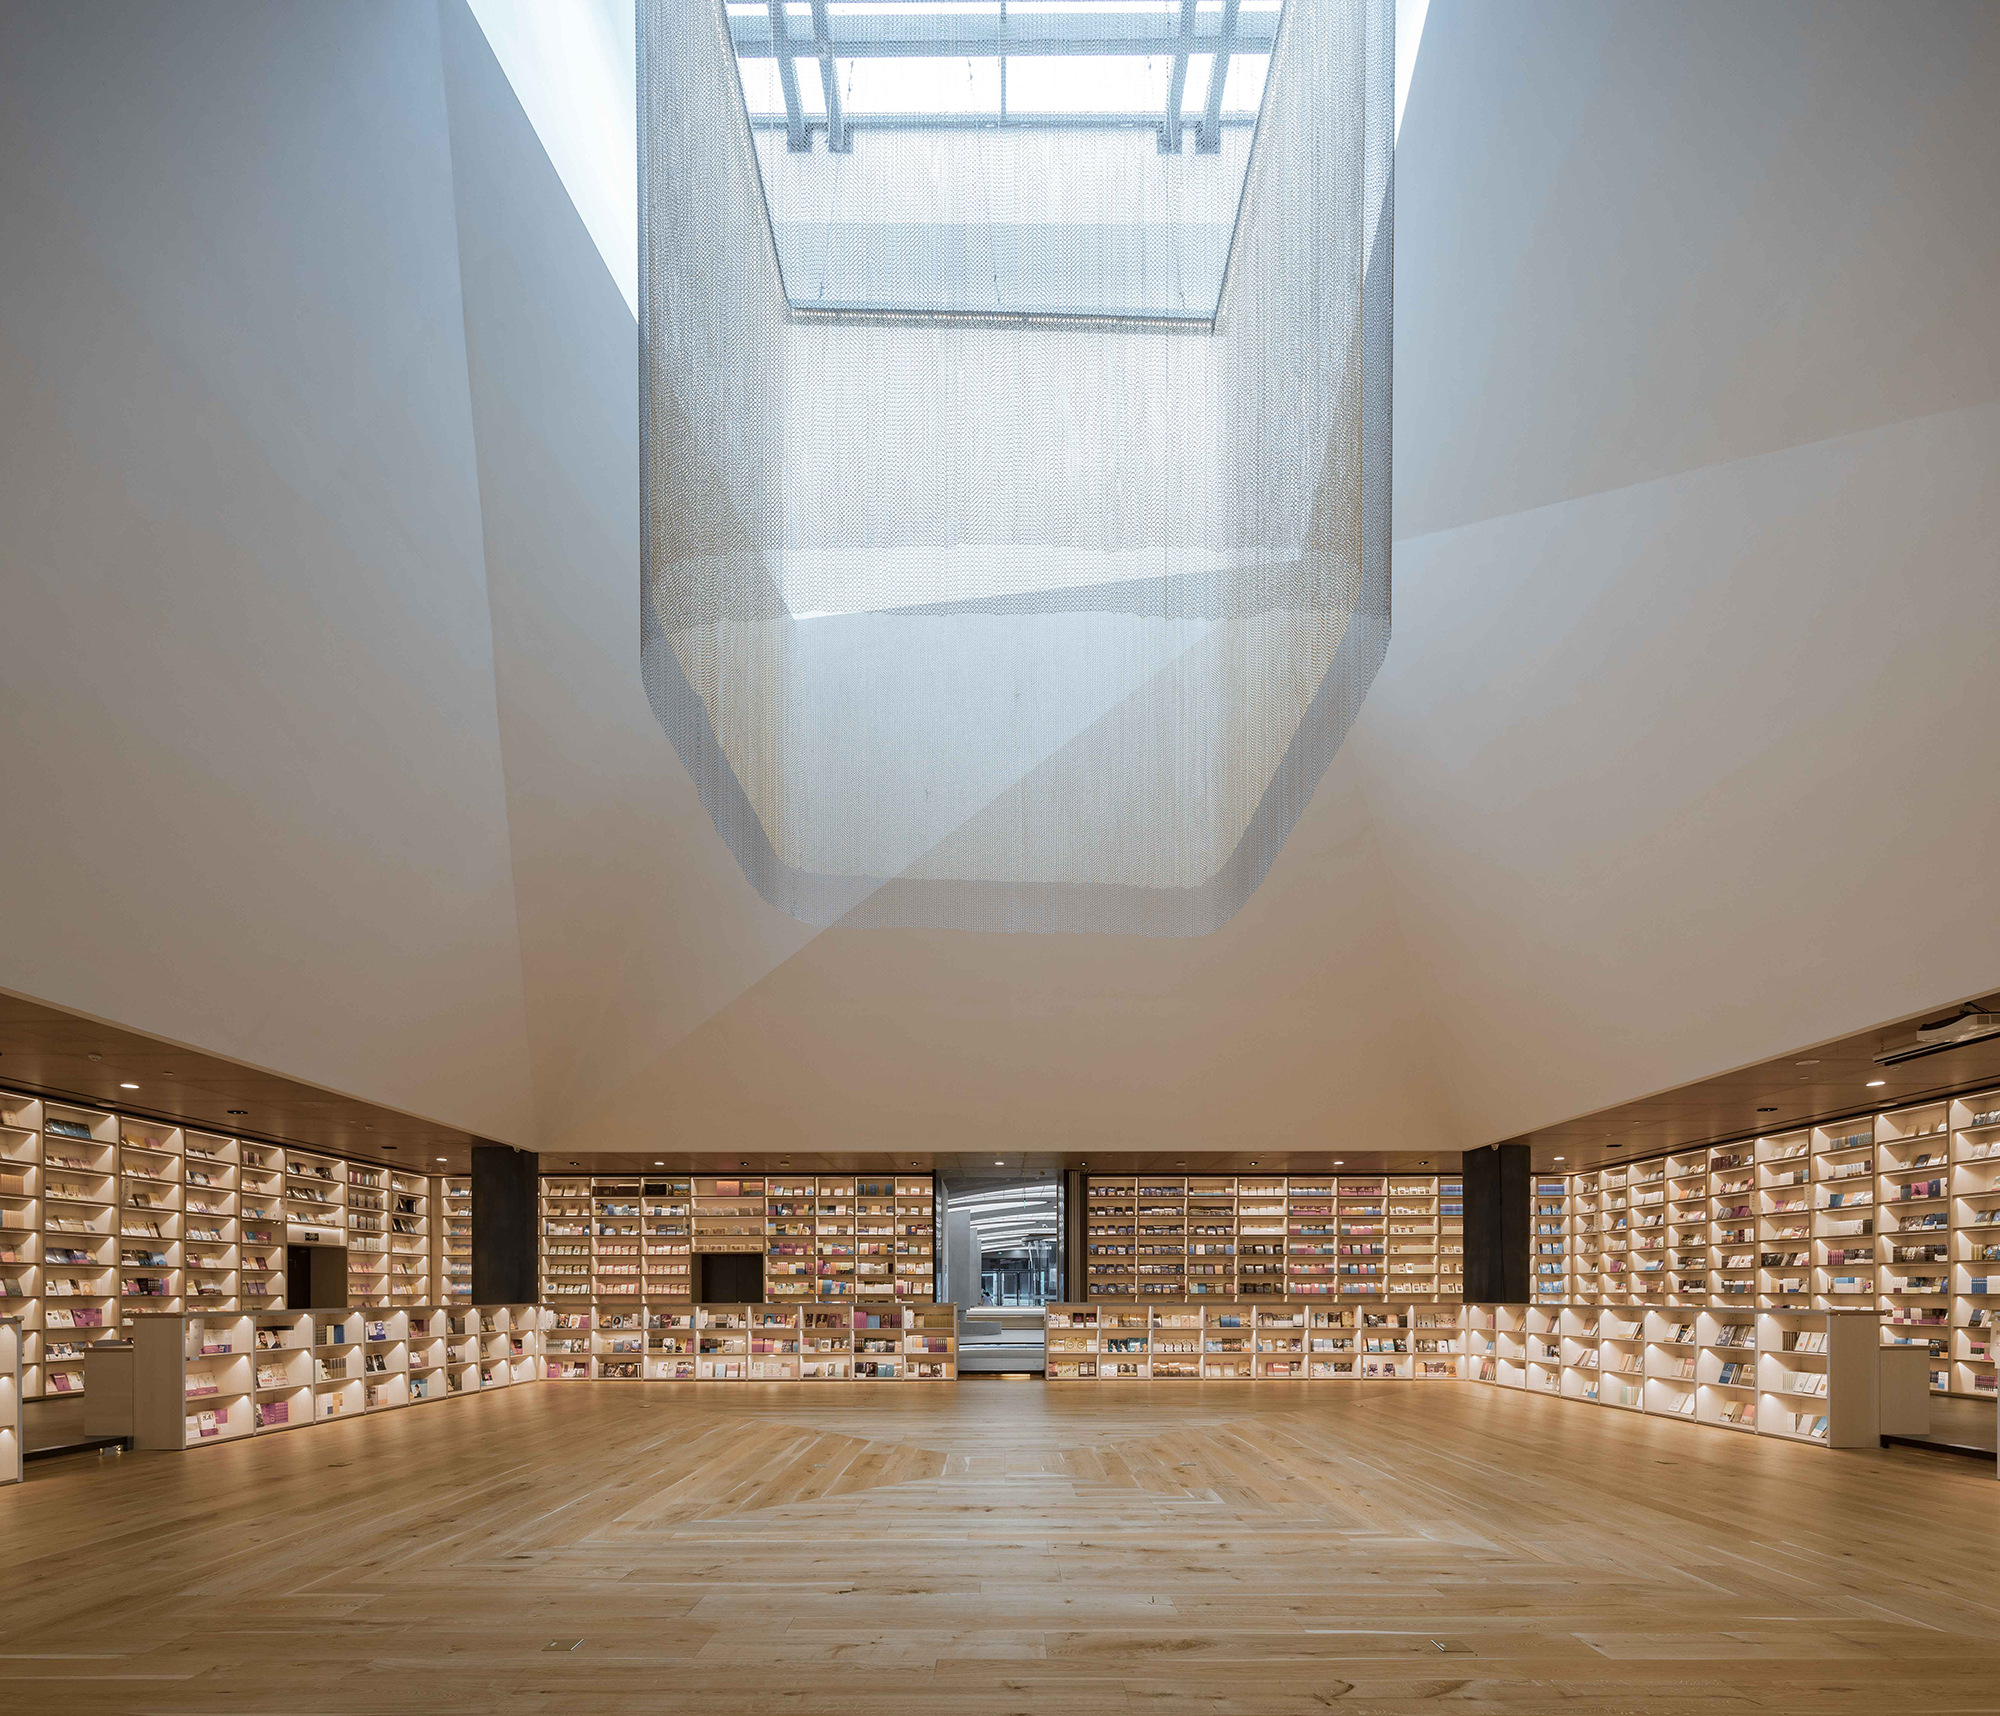 图片[11]|丰东鄂邦书店与图书馆|ART-Arrakis | 建筑室内设计的创新与灵感